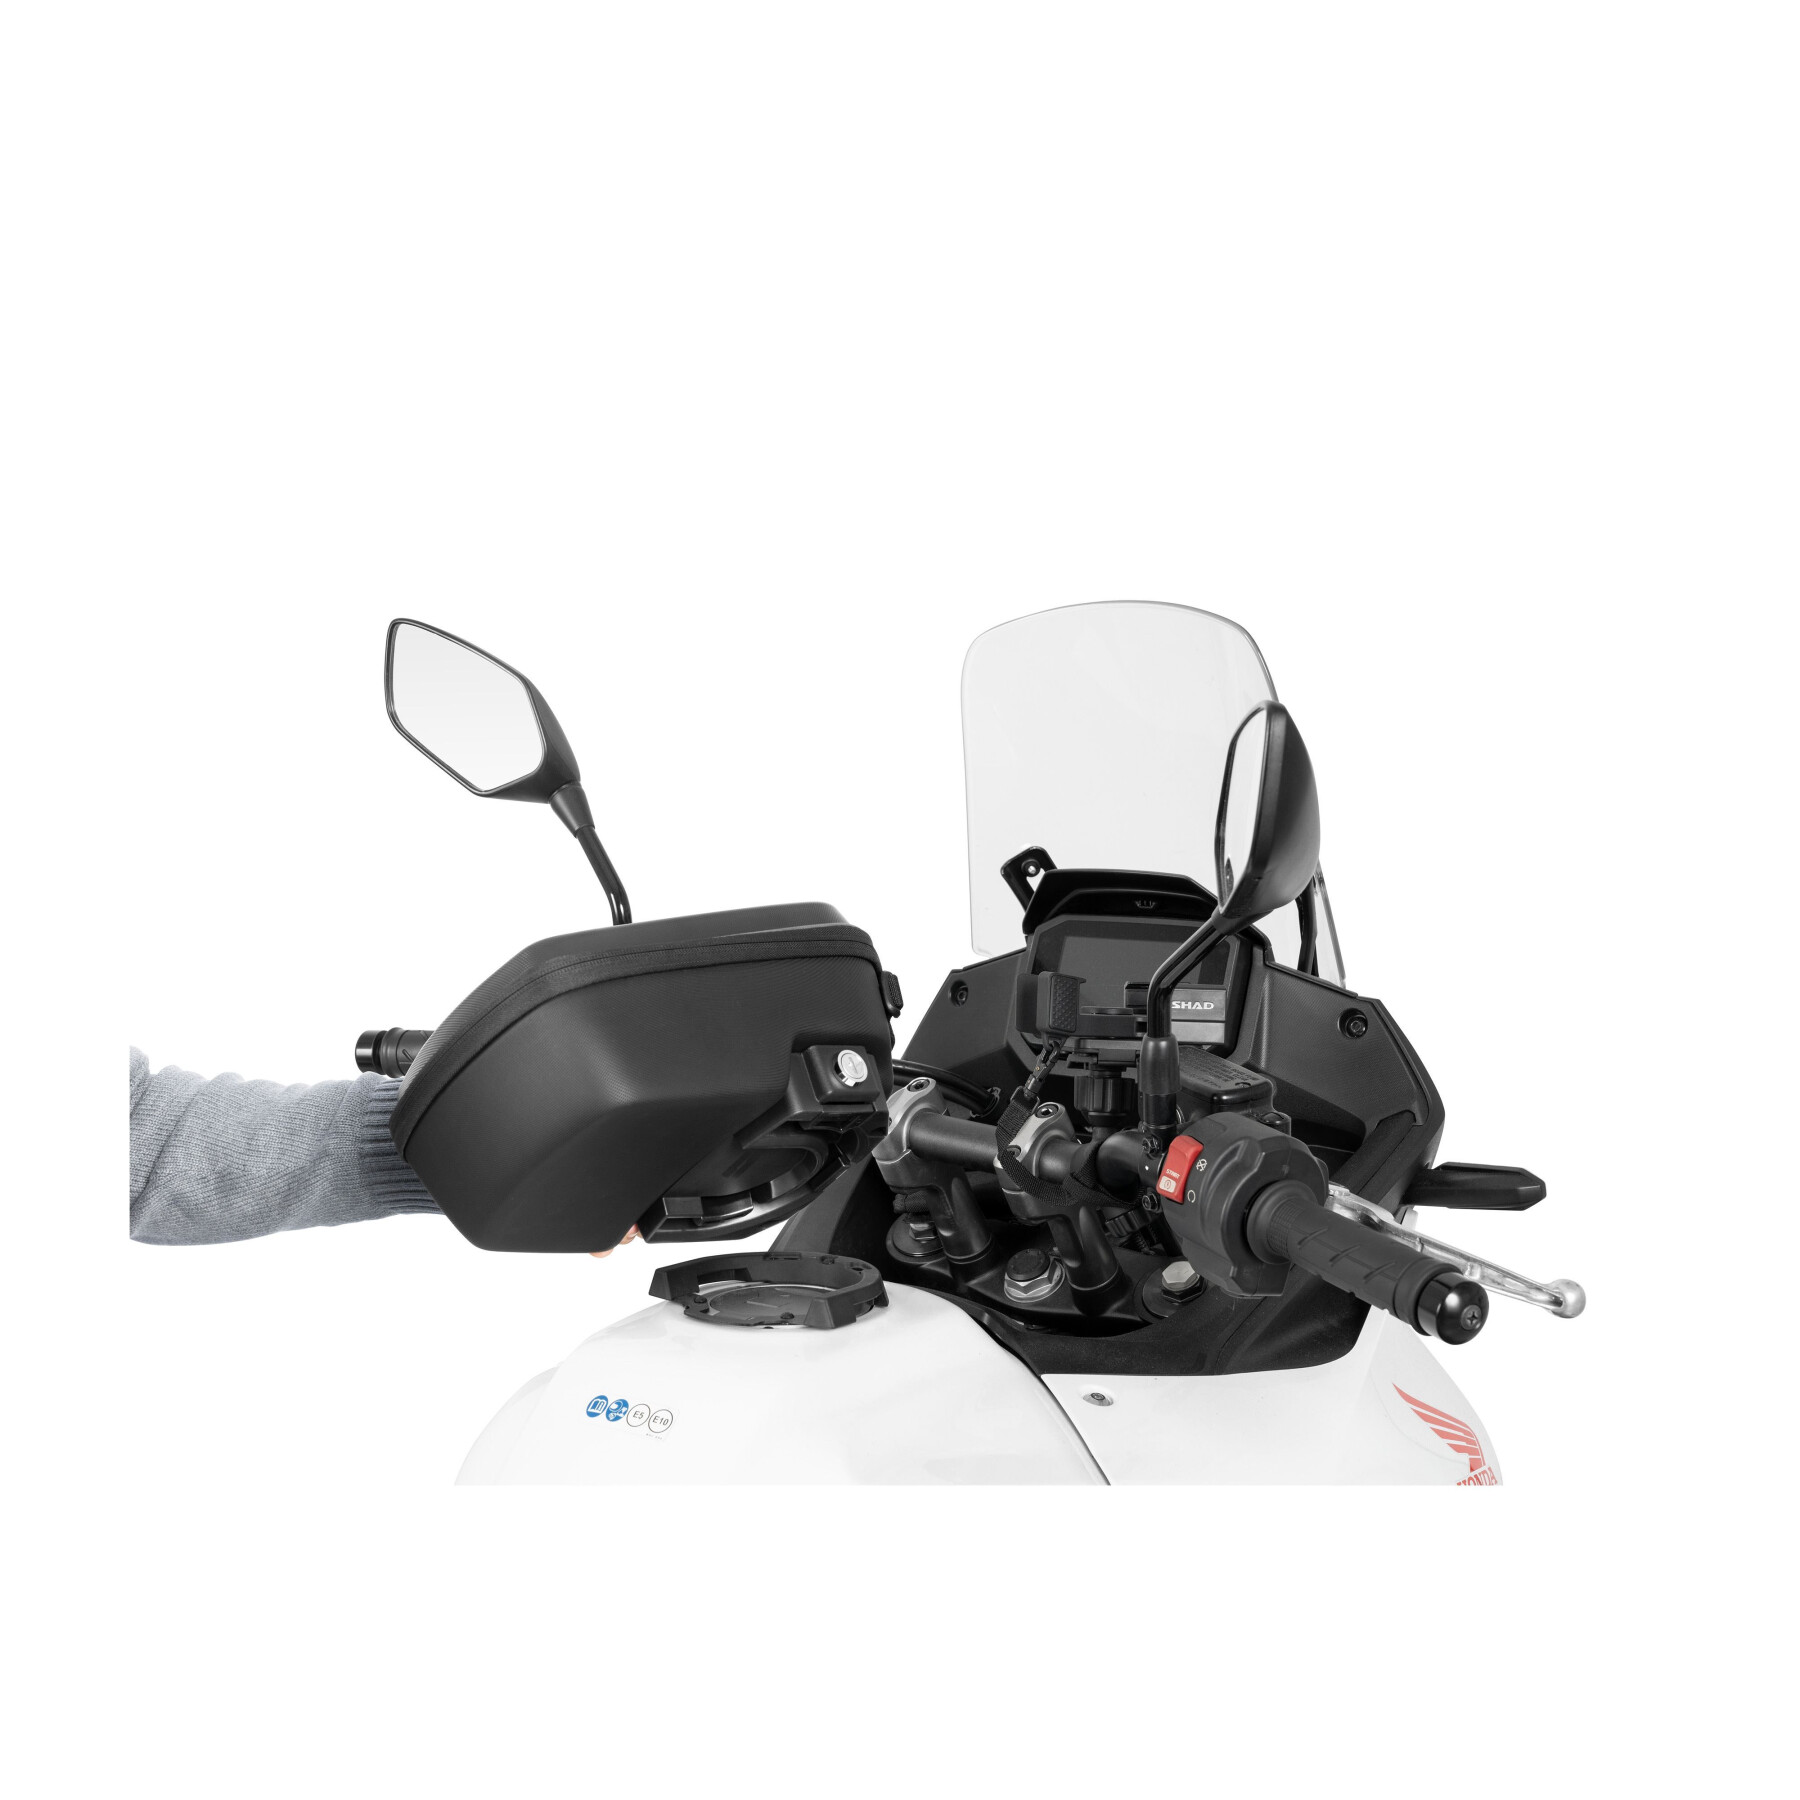 Motorcycle tank Bag Shad Click System VG1